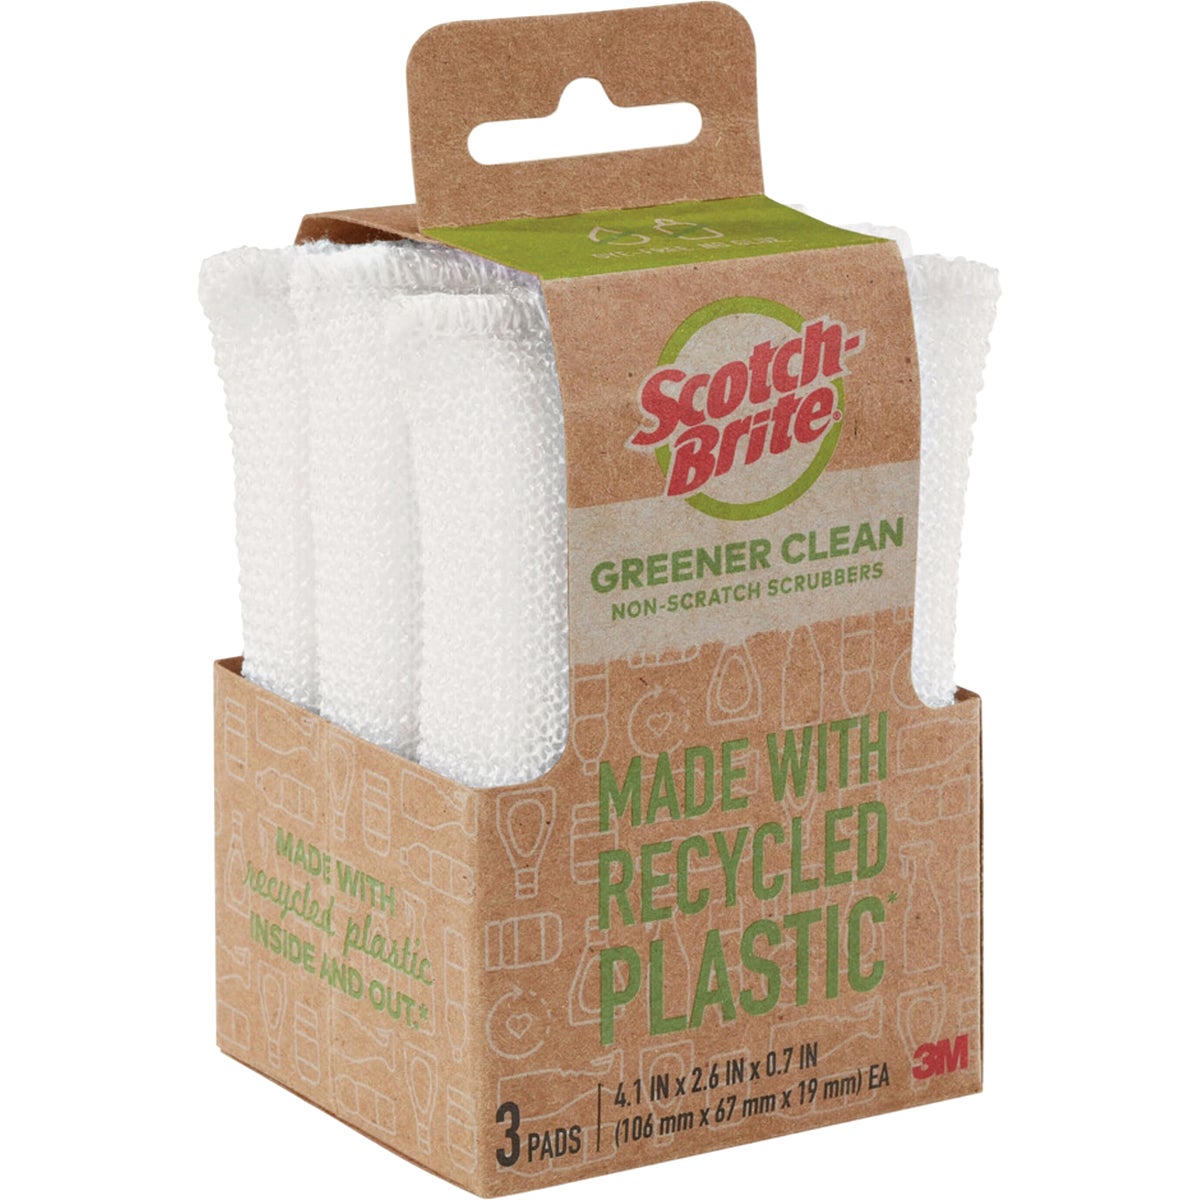 Scotch-Brite Greener Clean Plastic Scrubber (3-Count)